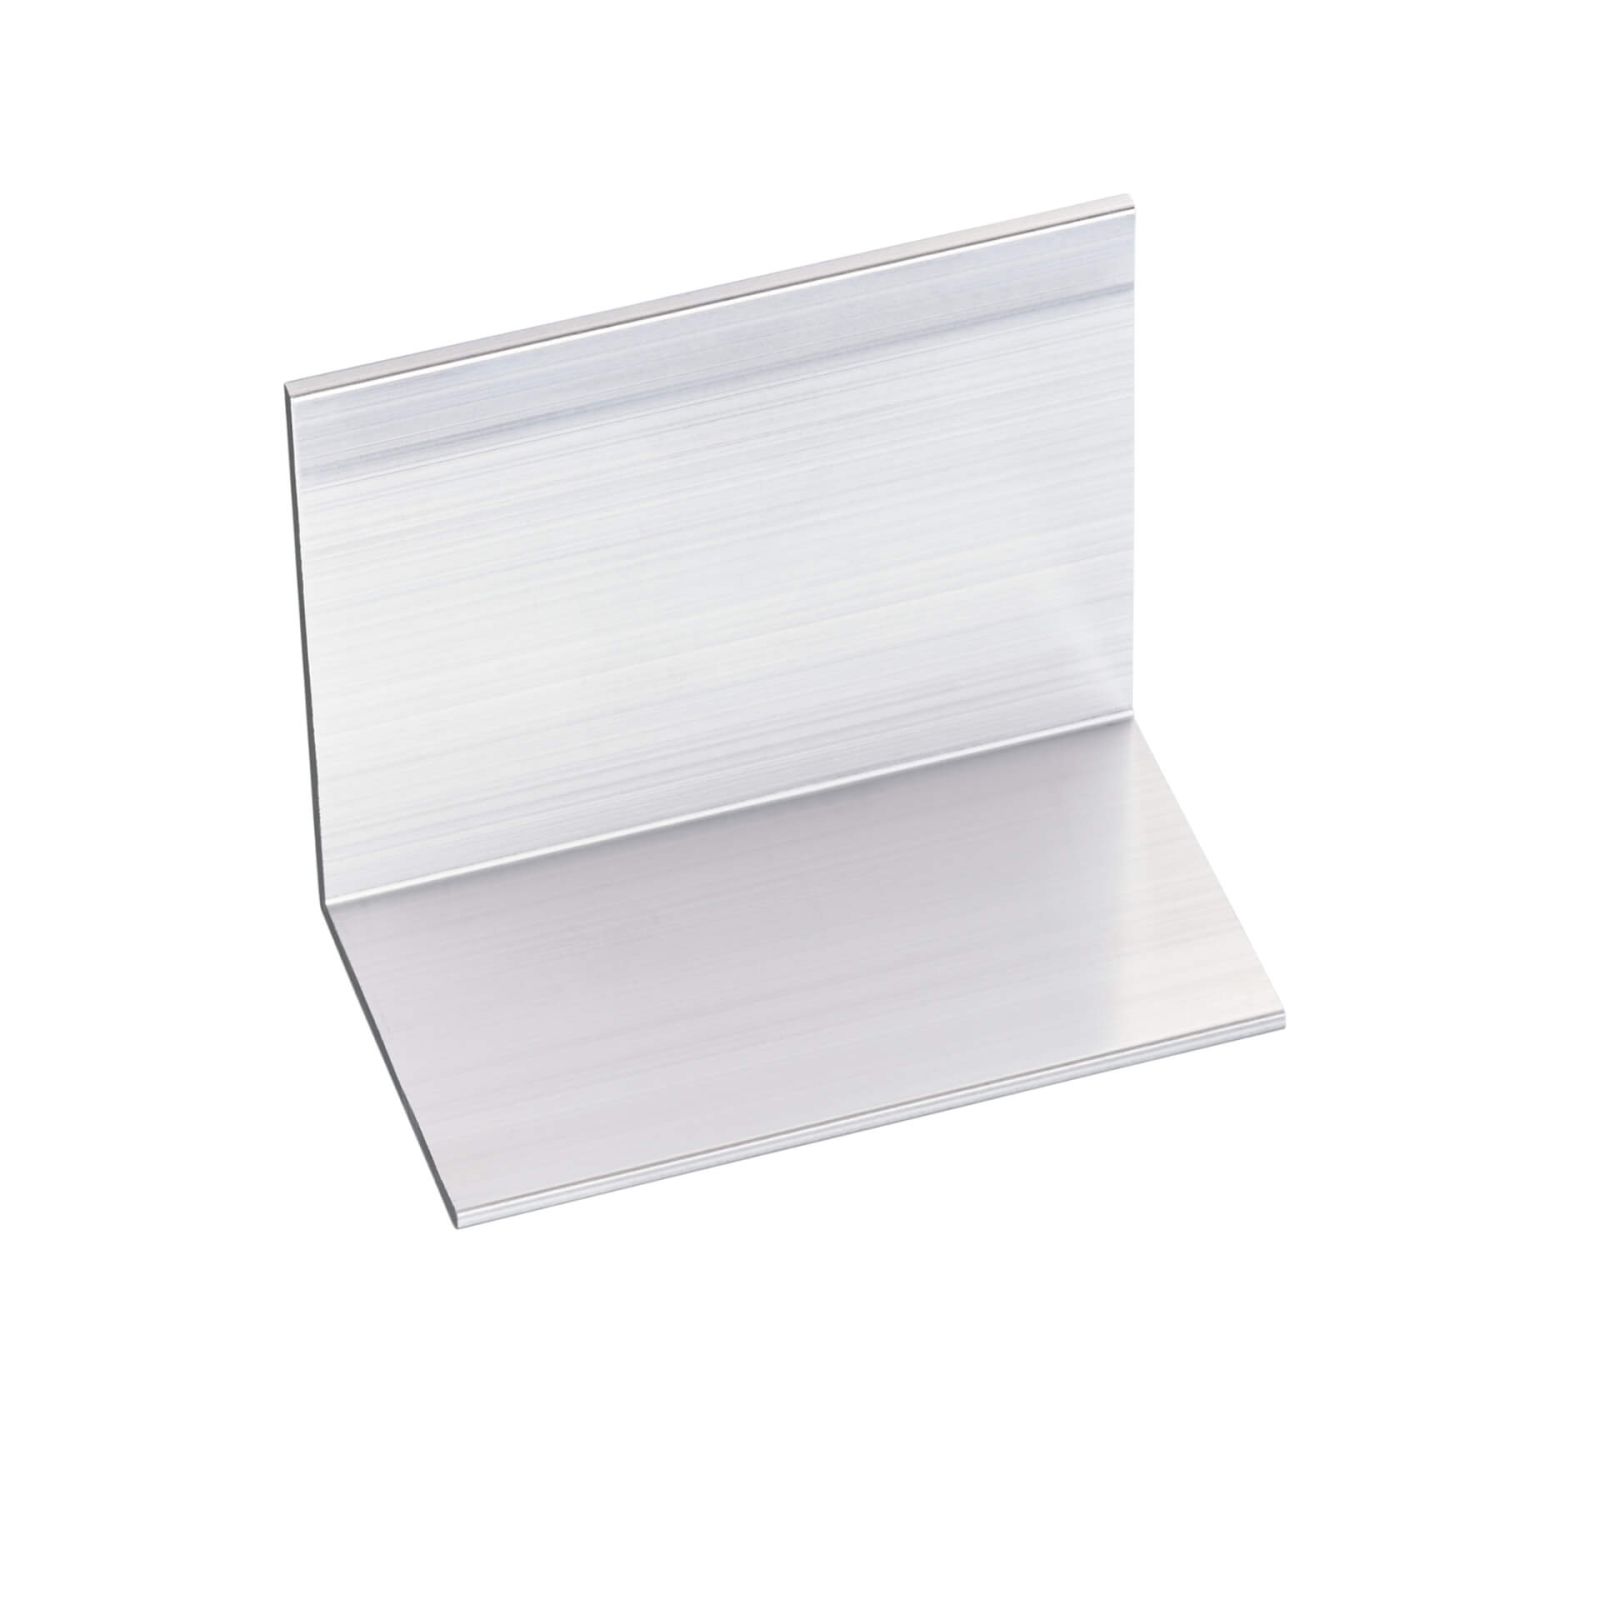 Polycarbonat Stegplatte | 16 mm | Profil A1 | Sparpaket | Plattenbreite 980 mm | Klar | Extra stark | Breite 3,08 m | Länge 2,00 m #8